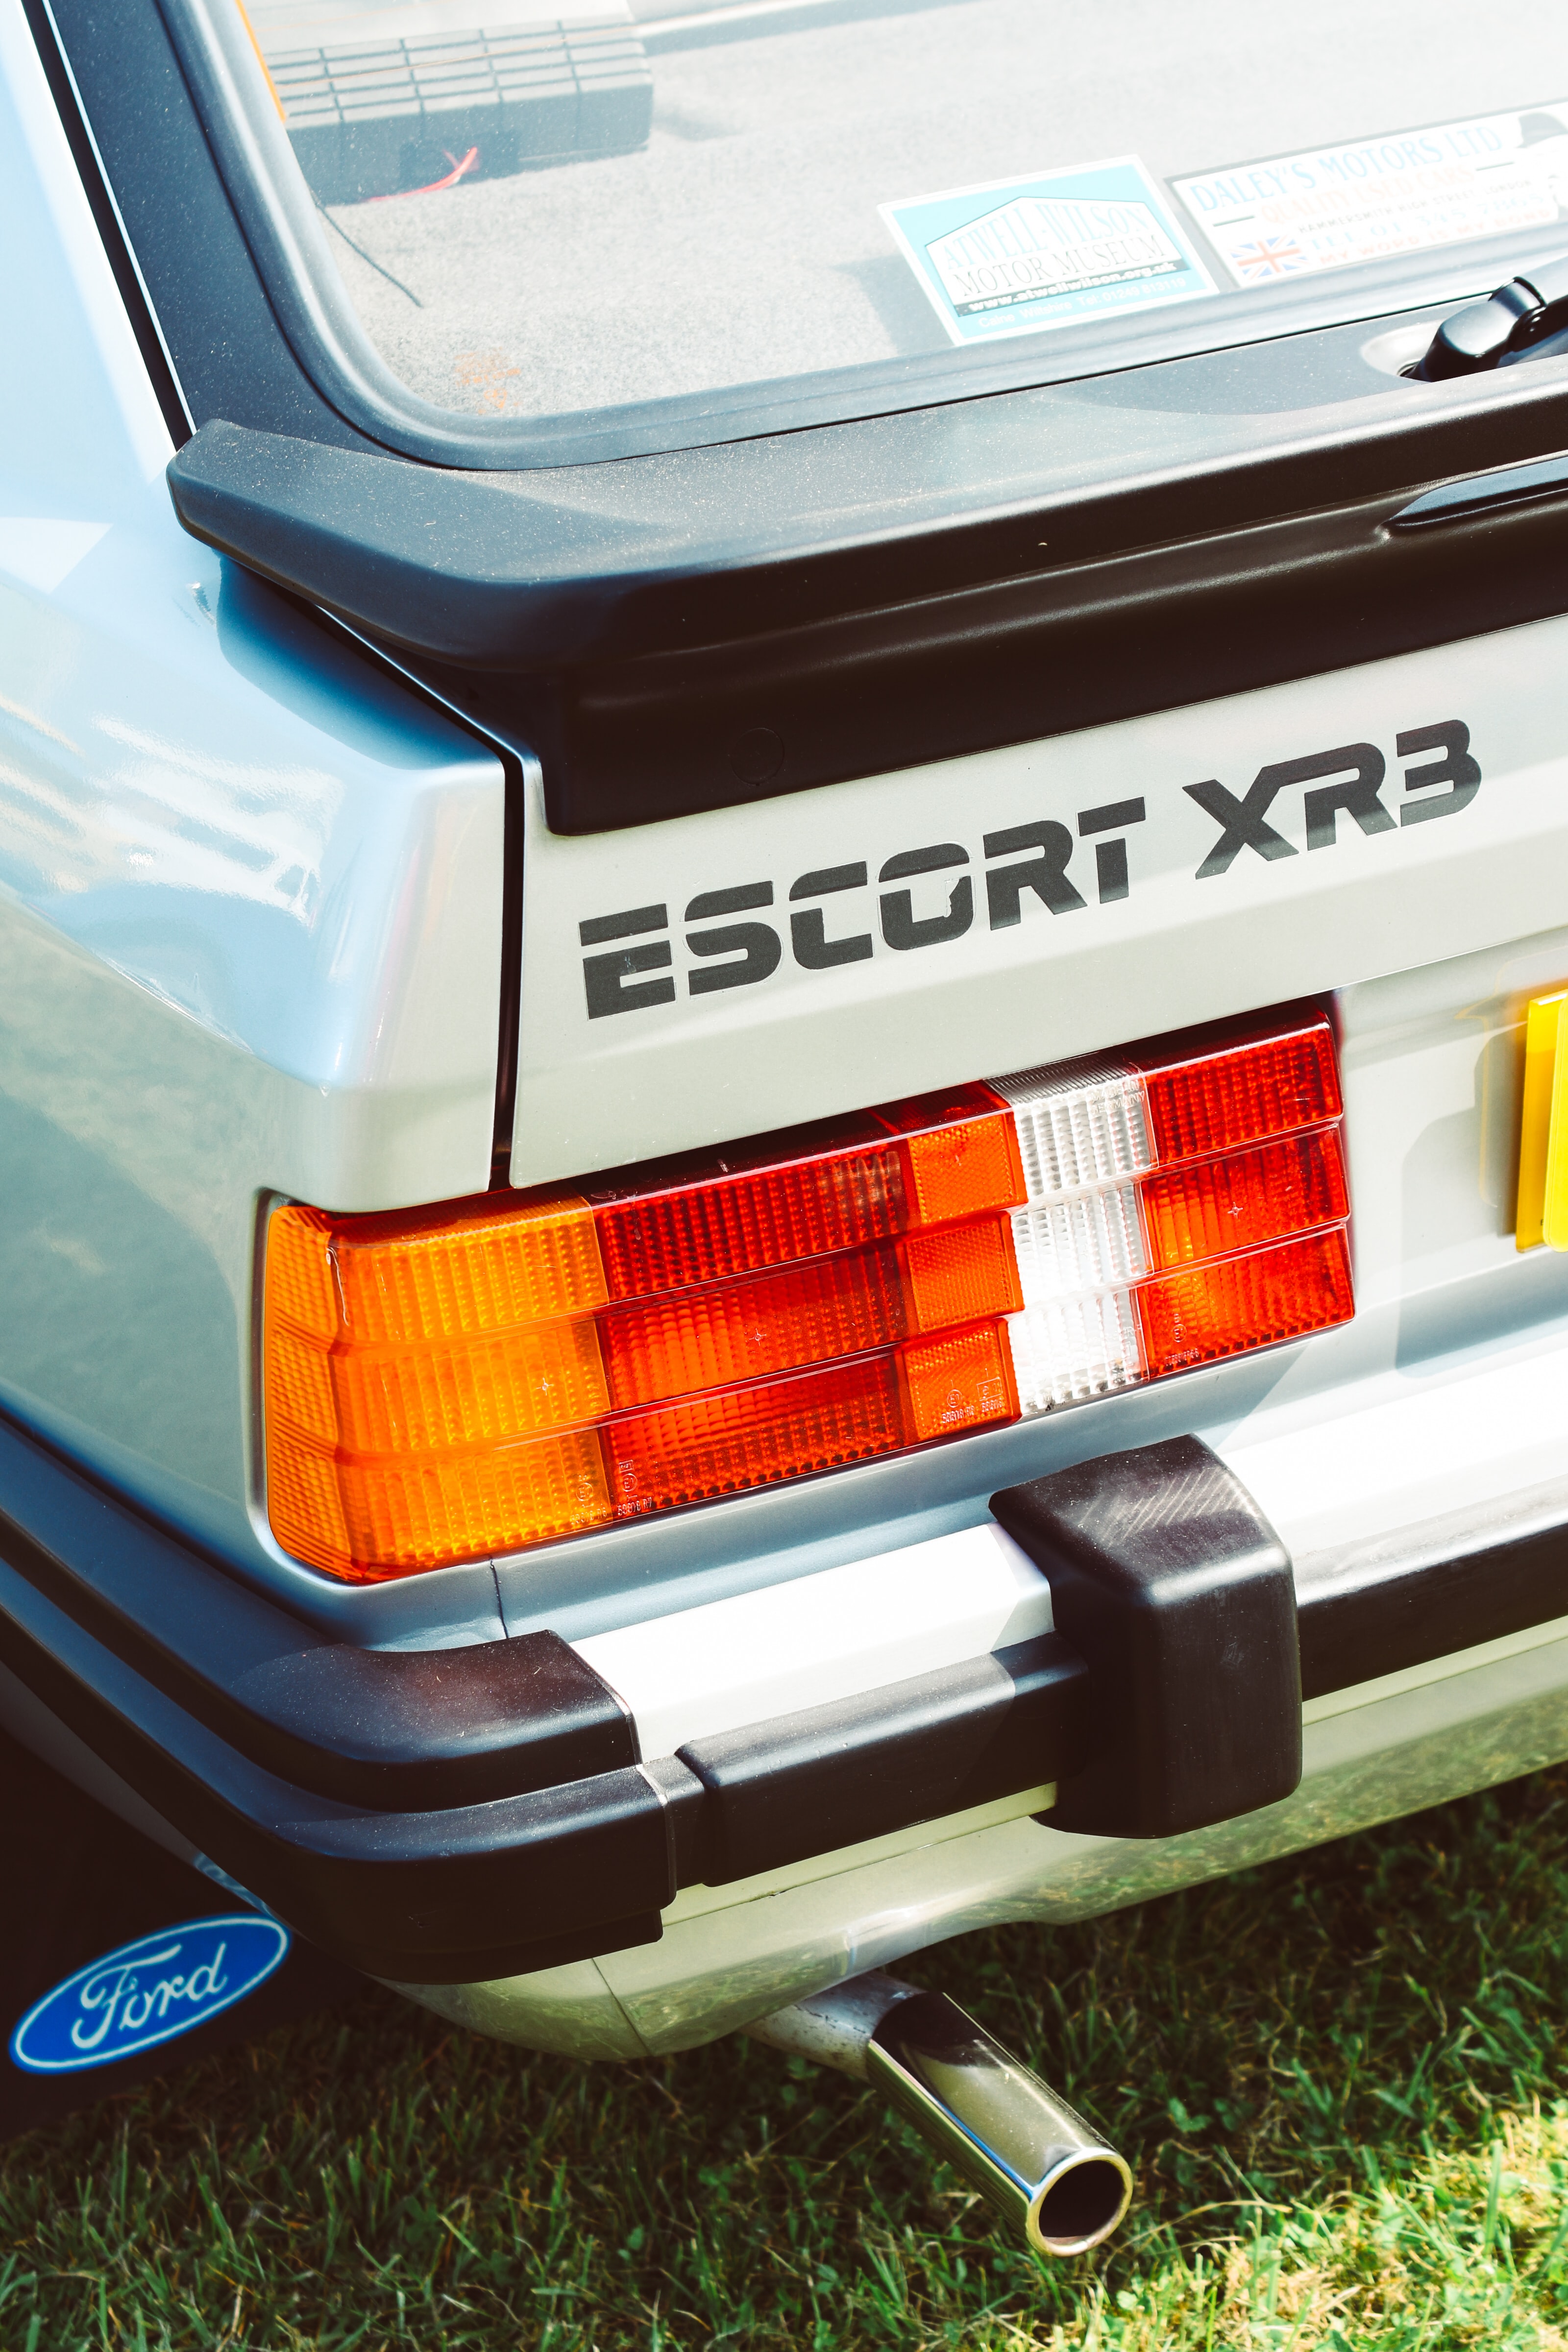 Ford Escort XR3